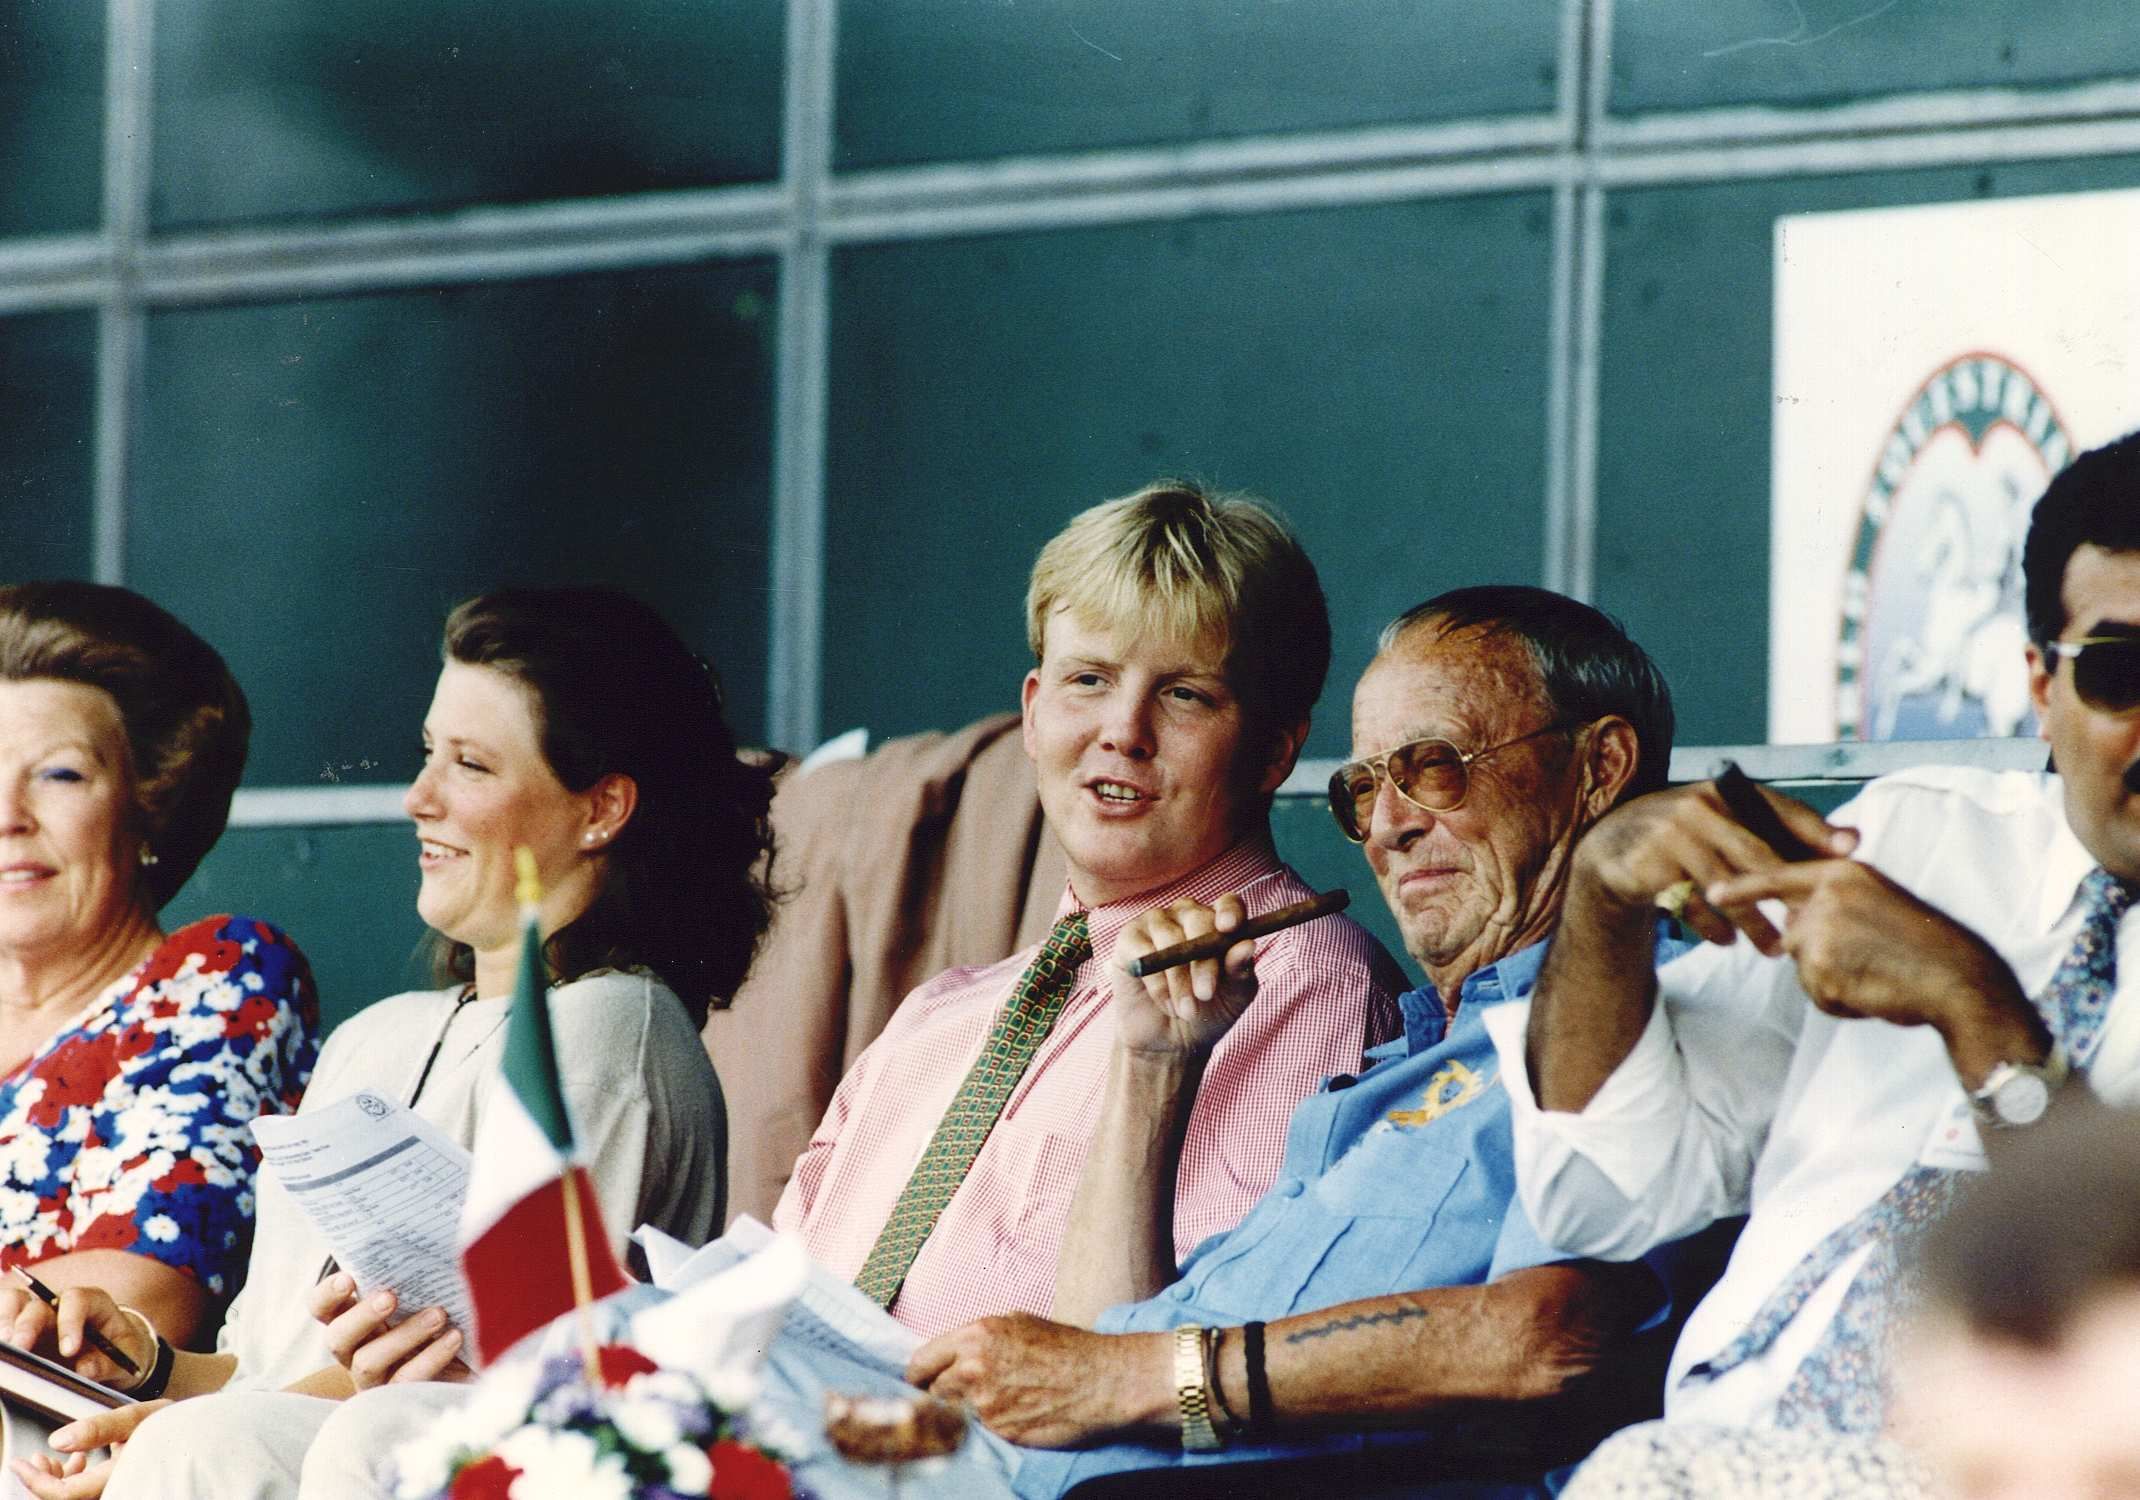 1994-08-04 12:00:00 Wereldruiterspelen. Koninklijke belangstelling voor de landenwedstrijd vlnr: koningin Beatrix, de Noorse prinses Martha Louise, prins Willem-Alexander en prins Bernhard.